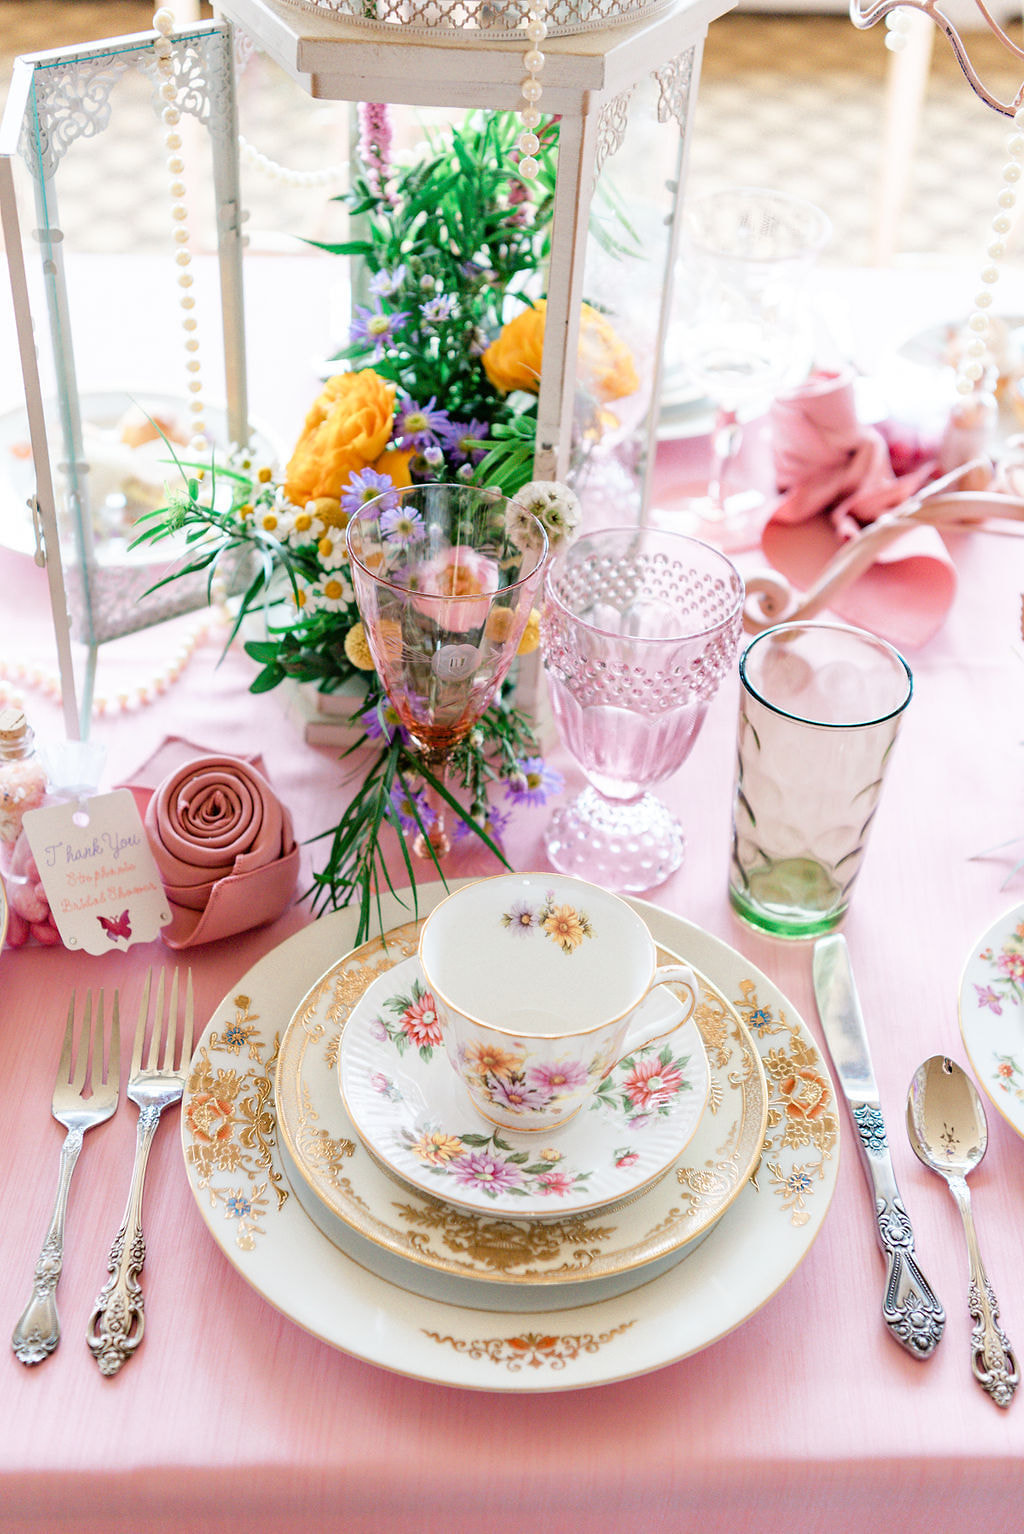 pink wine glasses, teacup and saucer, elegant floral dinnerware, mismatched vintage flatware, pink linens